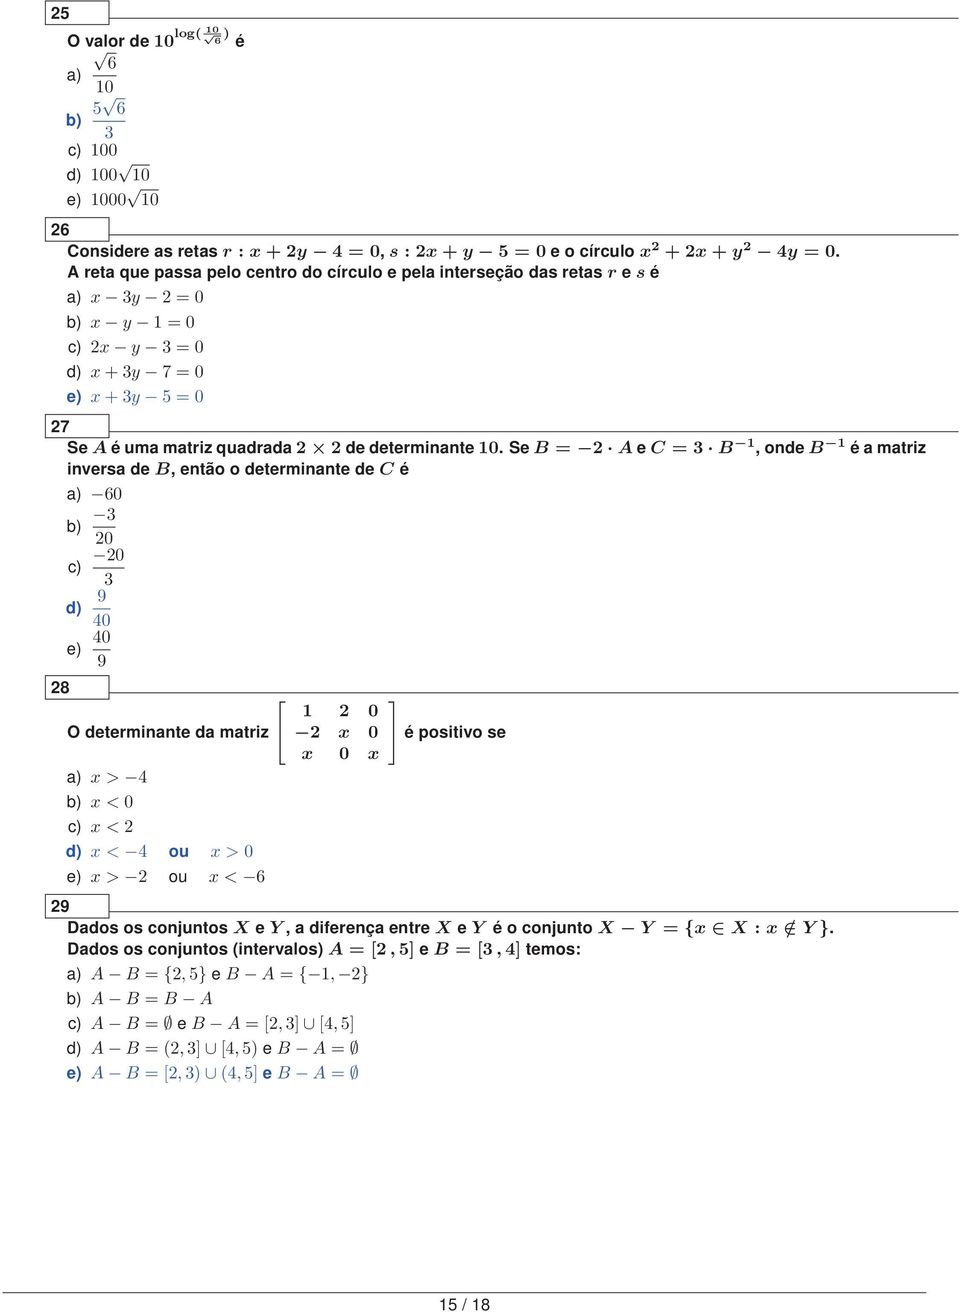 Se B = A e C = 3 B 1, onde B 1 é a matriz inversa de B, então o determinante de C é a) 60 b) 3 0 c) 0 3 9 d) 40 8 e) 40 9 O determinante da matriz a) x > 4 b) x < 0 c) x < d) x < 4 ou x > 0 e) x > ou